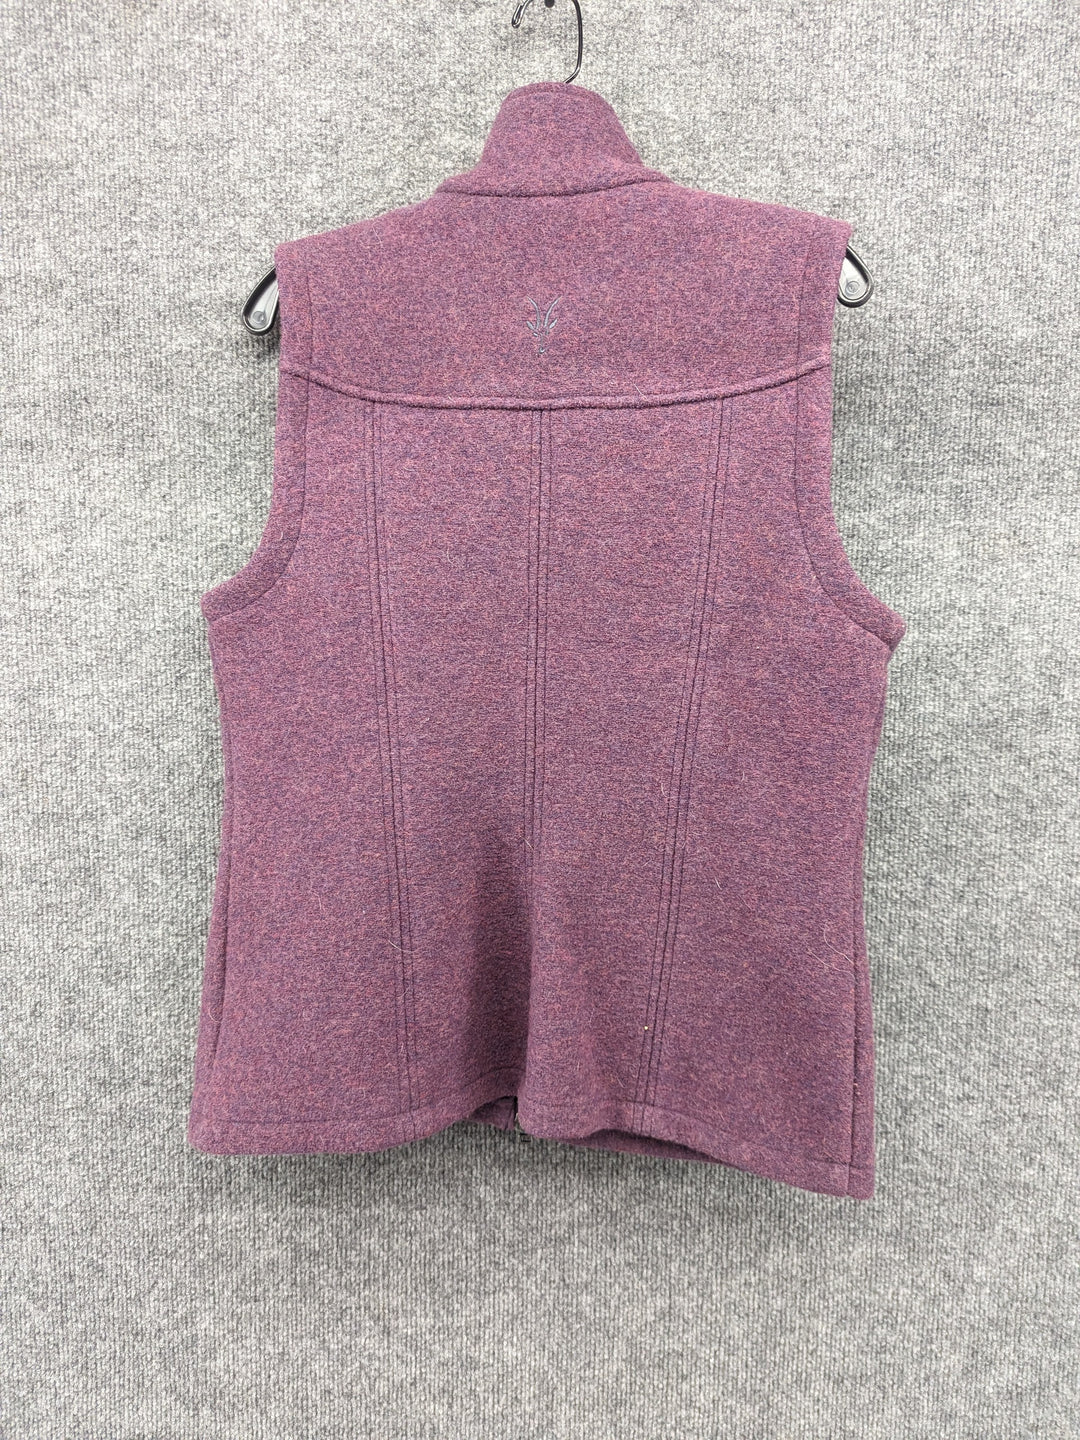 Misc. Size W Large Women's Fleece Vest – Rambleraven Gear Trader